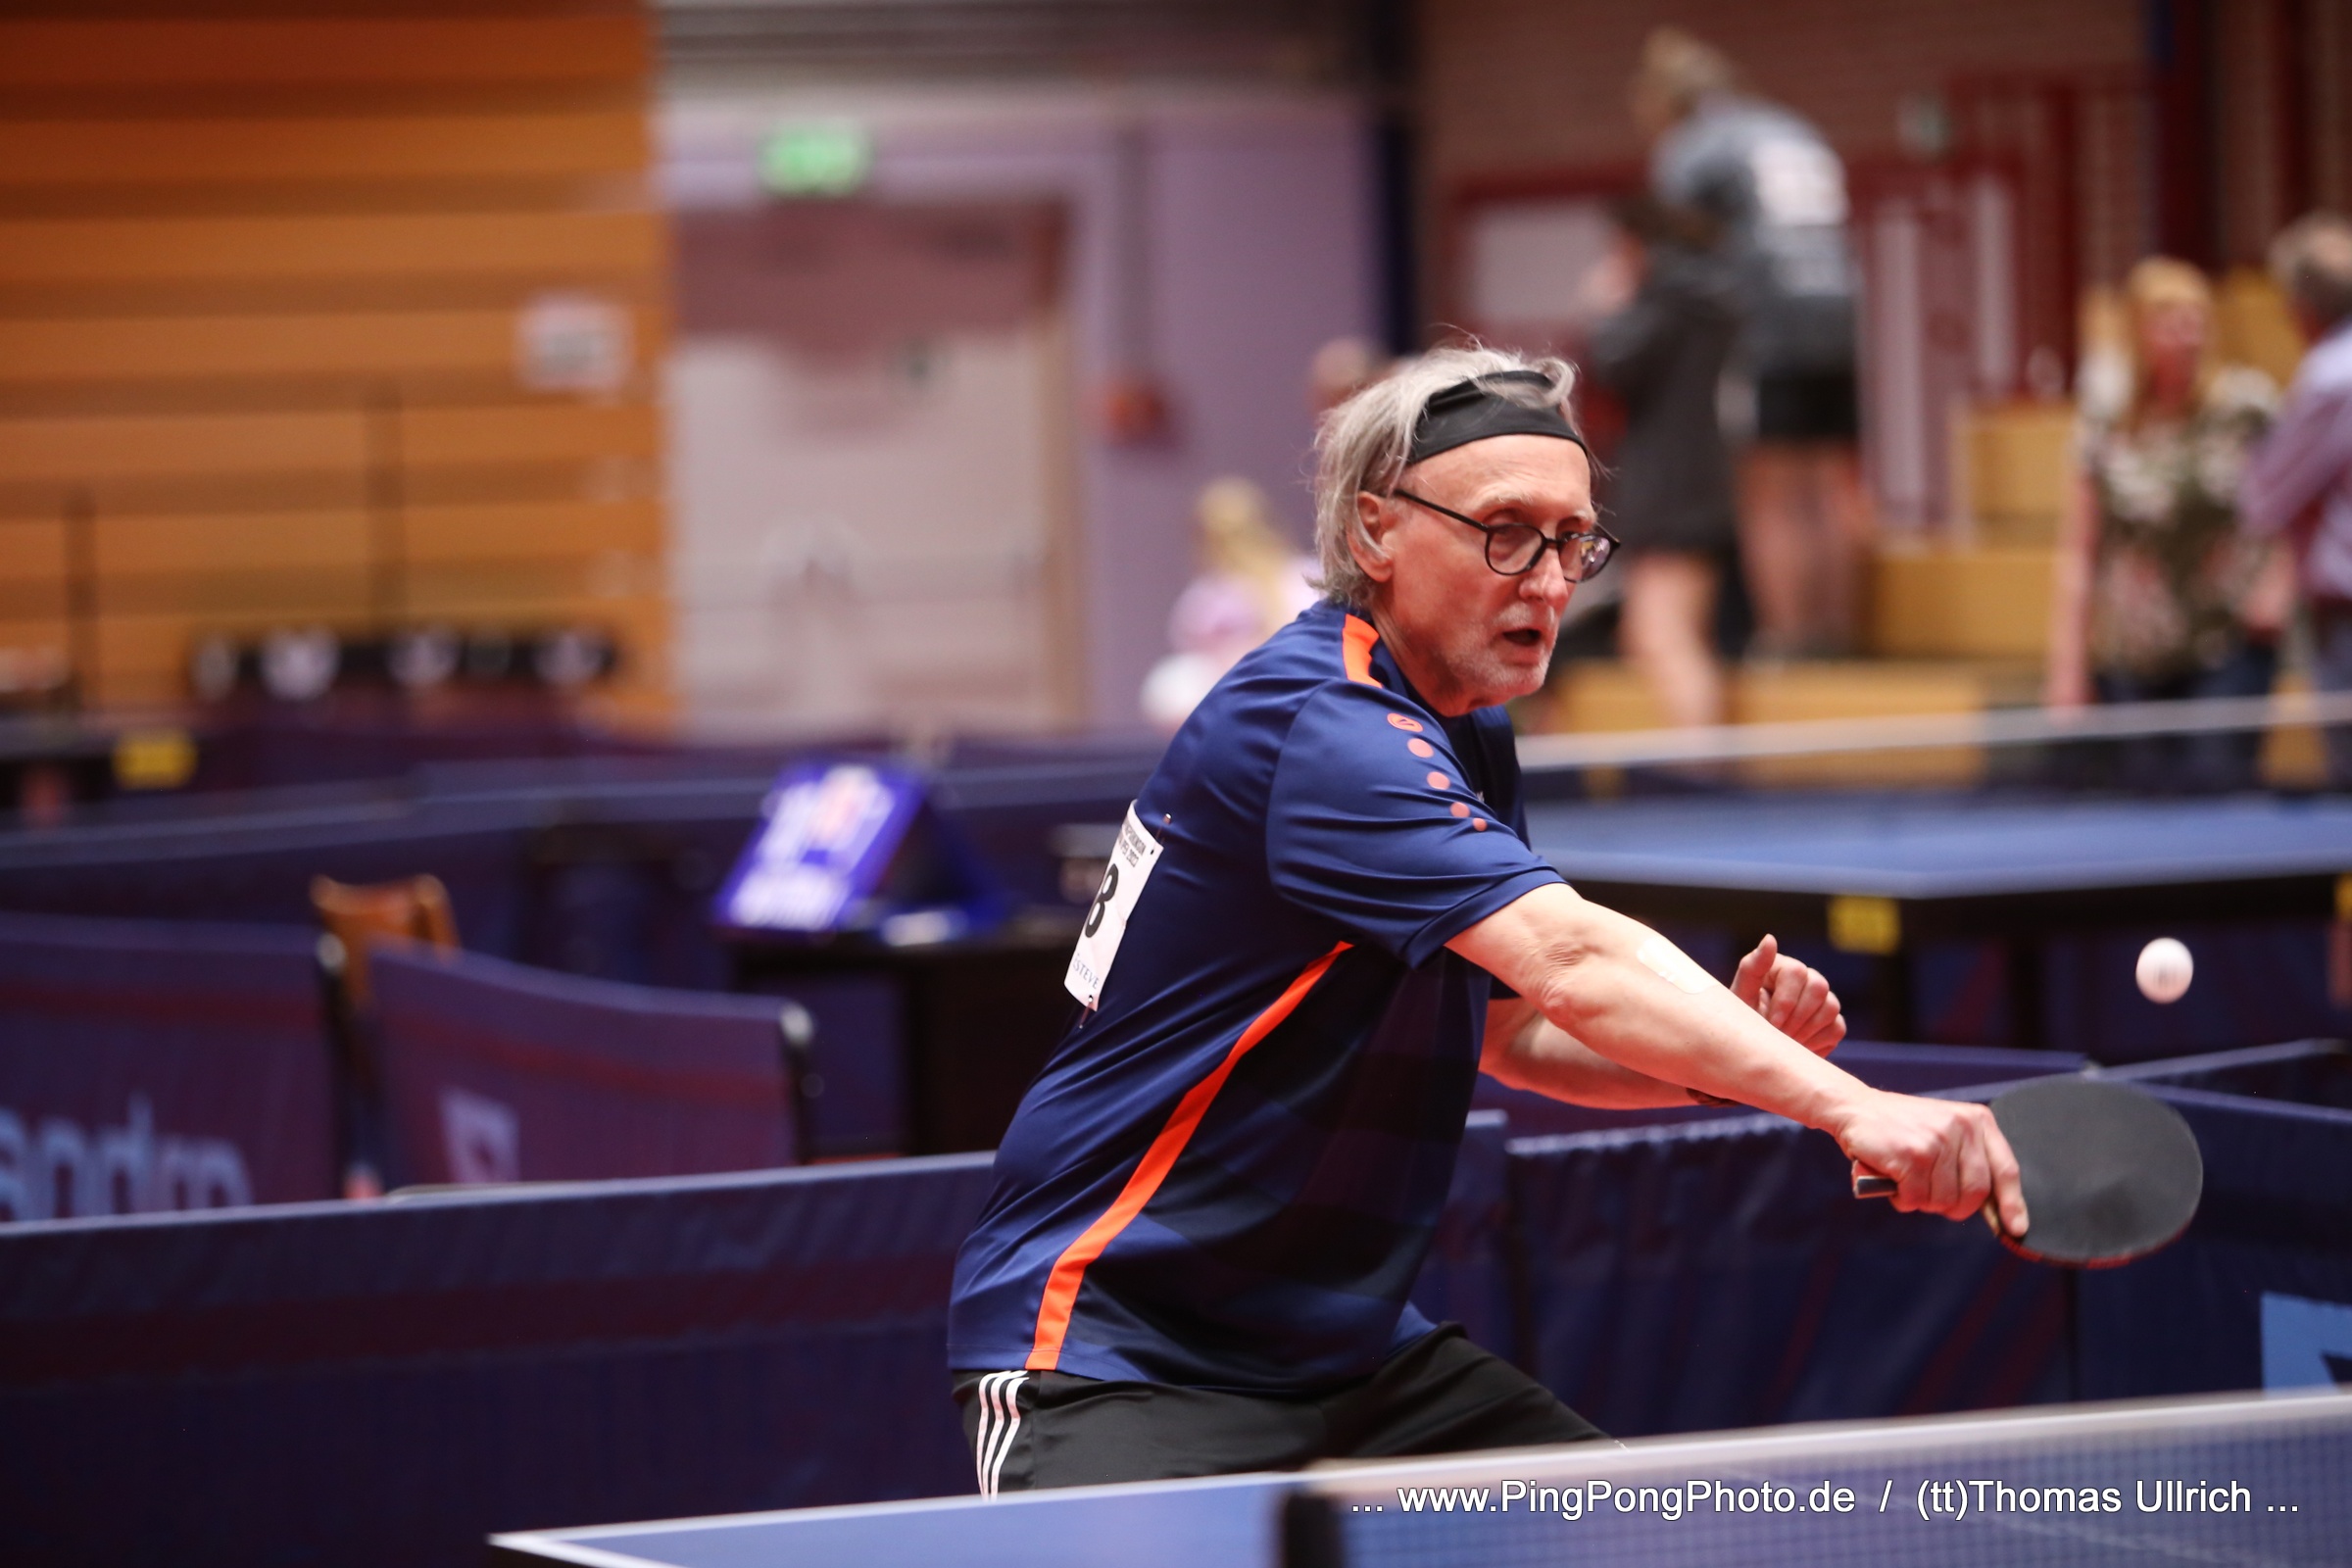 Wie ein großes Familientreffen – Ping Pong Parkinson German Open in Düsseldorf -17 Teilnehmende aus Bayern